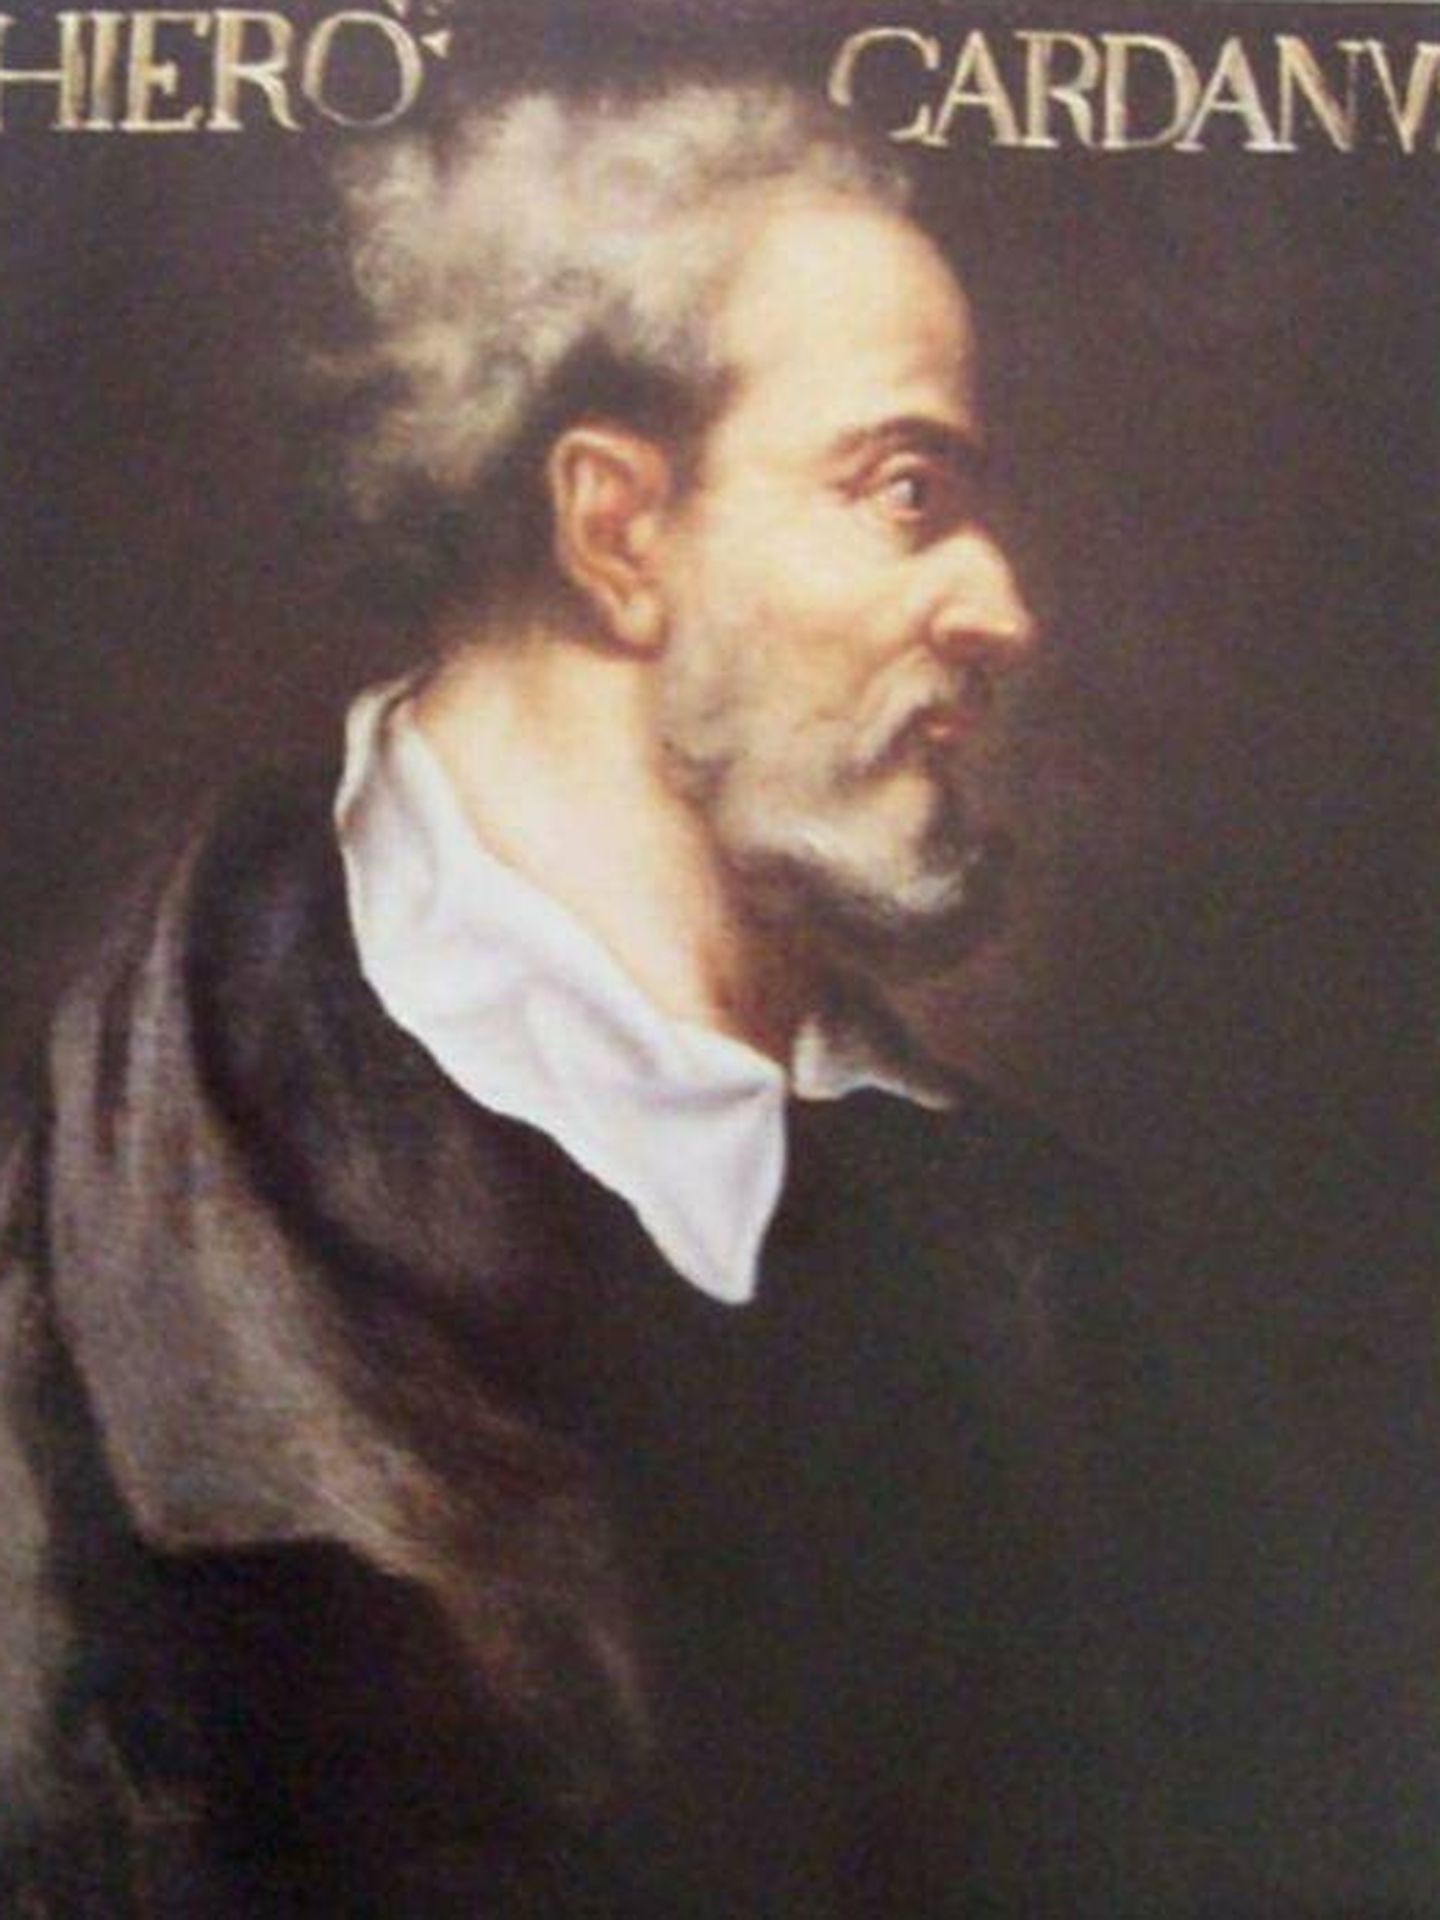 Retrato de Cardano en la Escuela de Matemáticas de la Universidad de St. Andrews. 